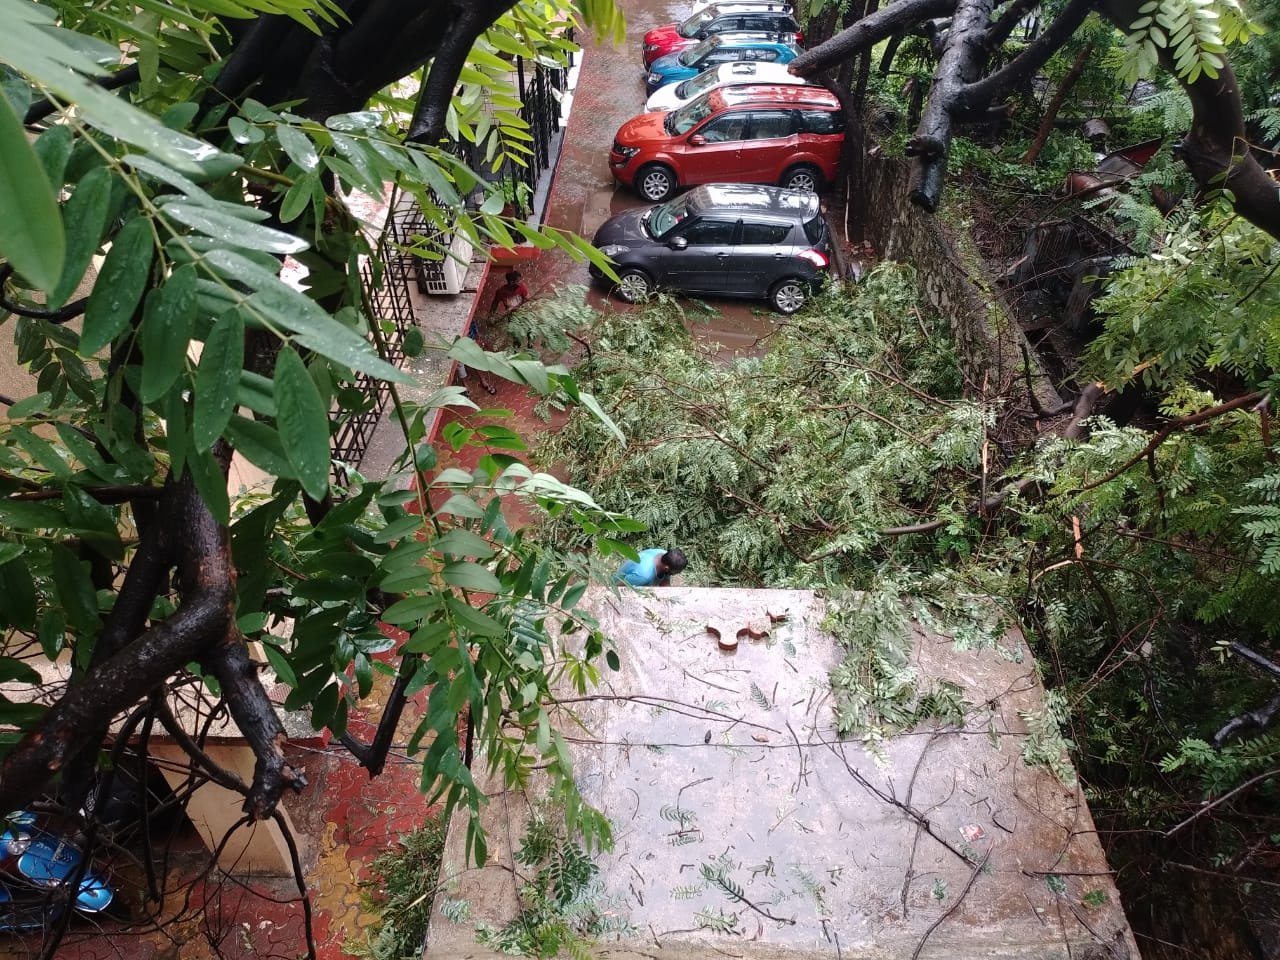 Adarsh Maharashtra | मुसळधार पाऊसात झाडाच्या फांद्या पडल्याने रहिवाशांच्या घराचे नुकसान